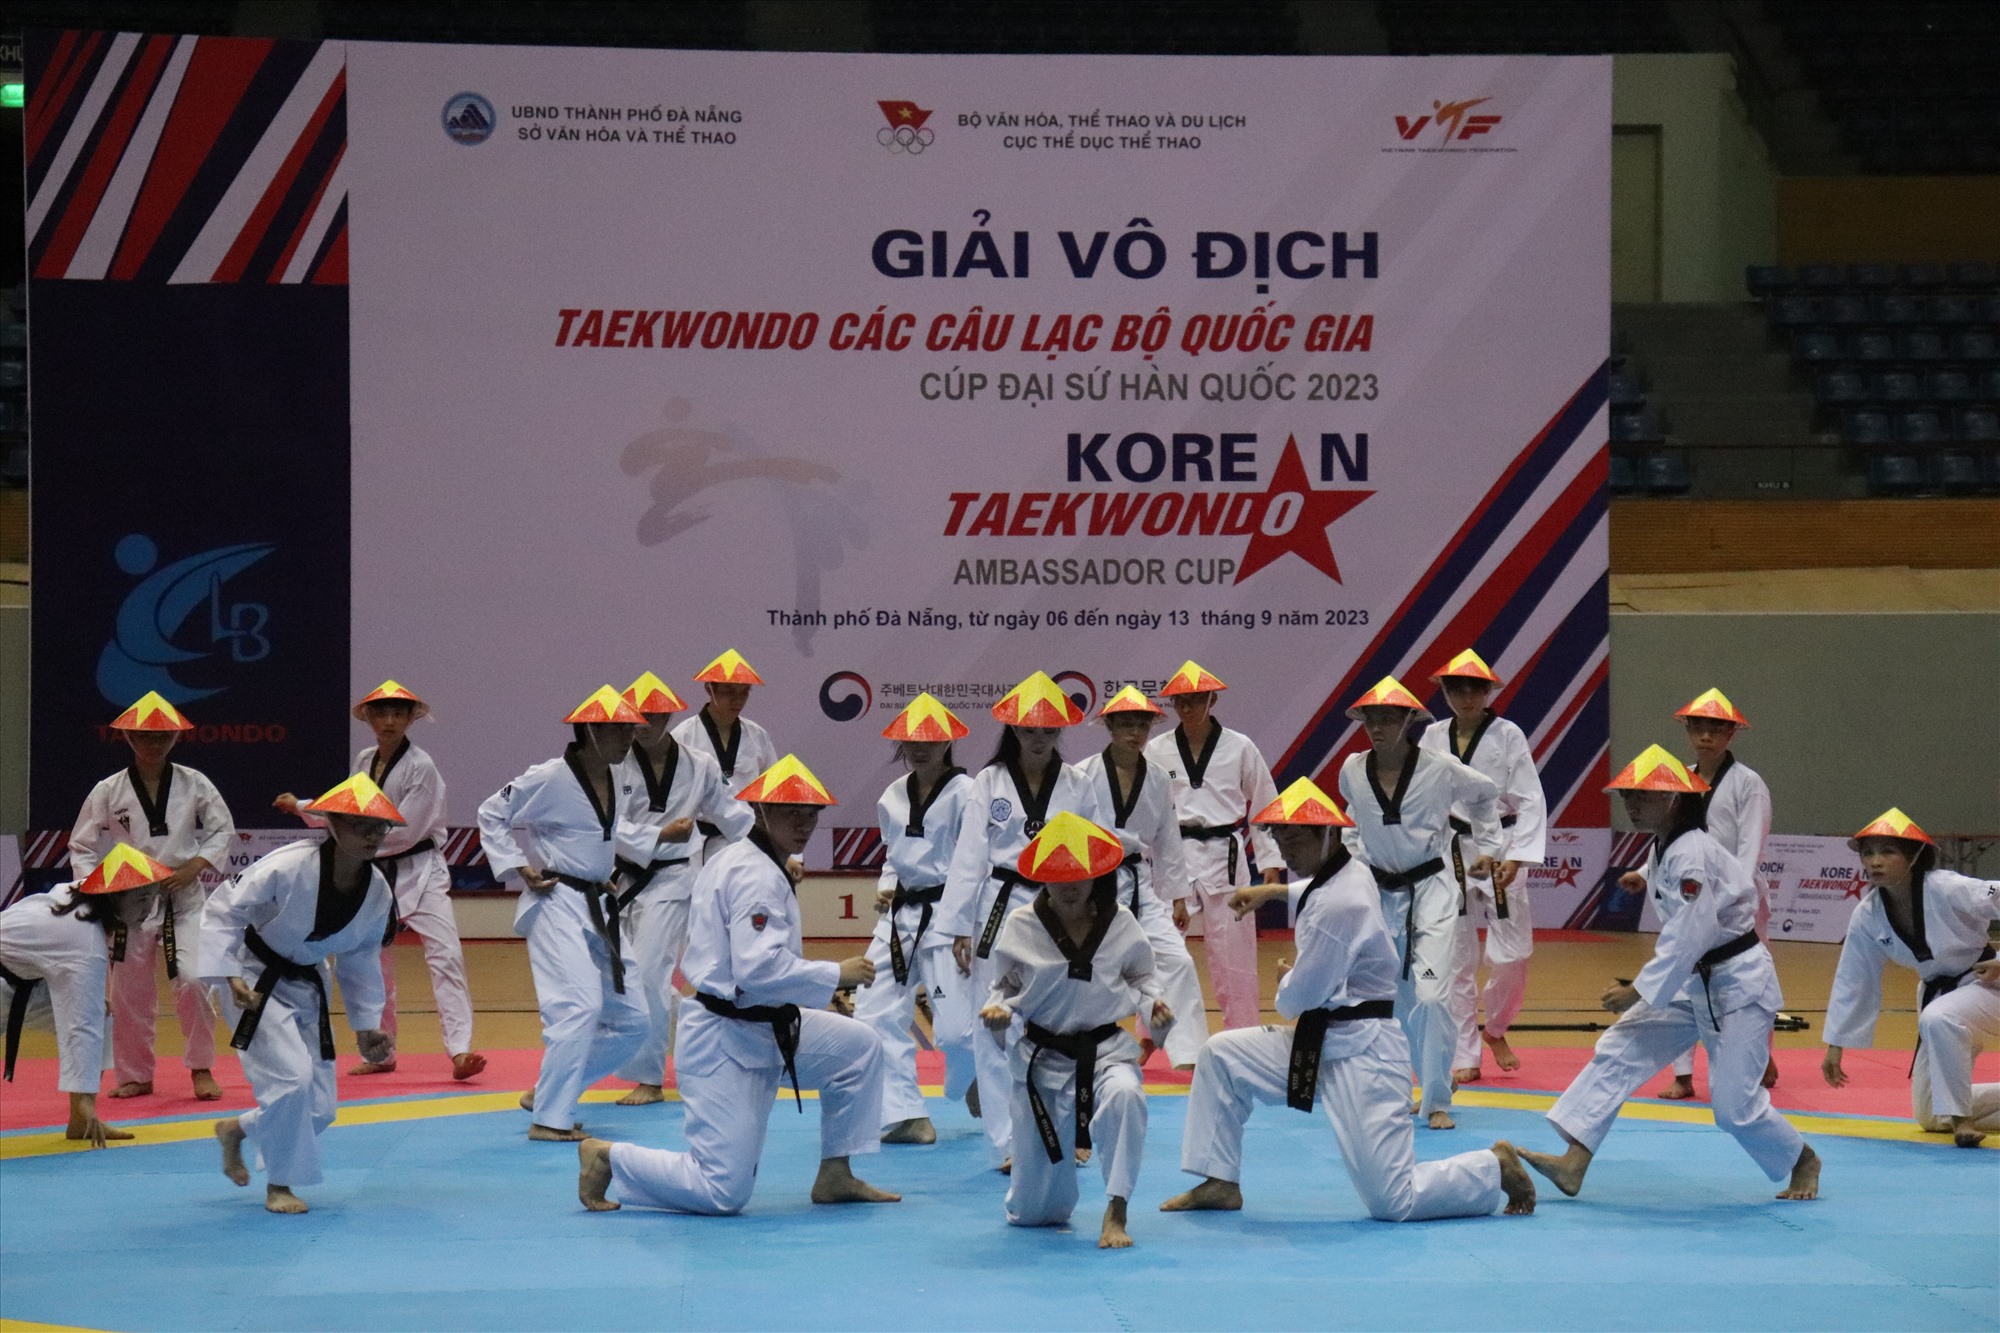 Màn trình diễn võ thuật của các vận động viên Đà Nẵng. Ảnh: Nguyễn Linh